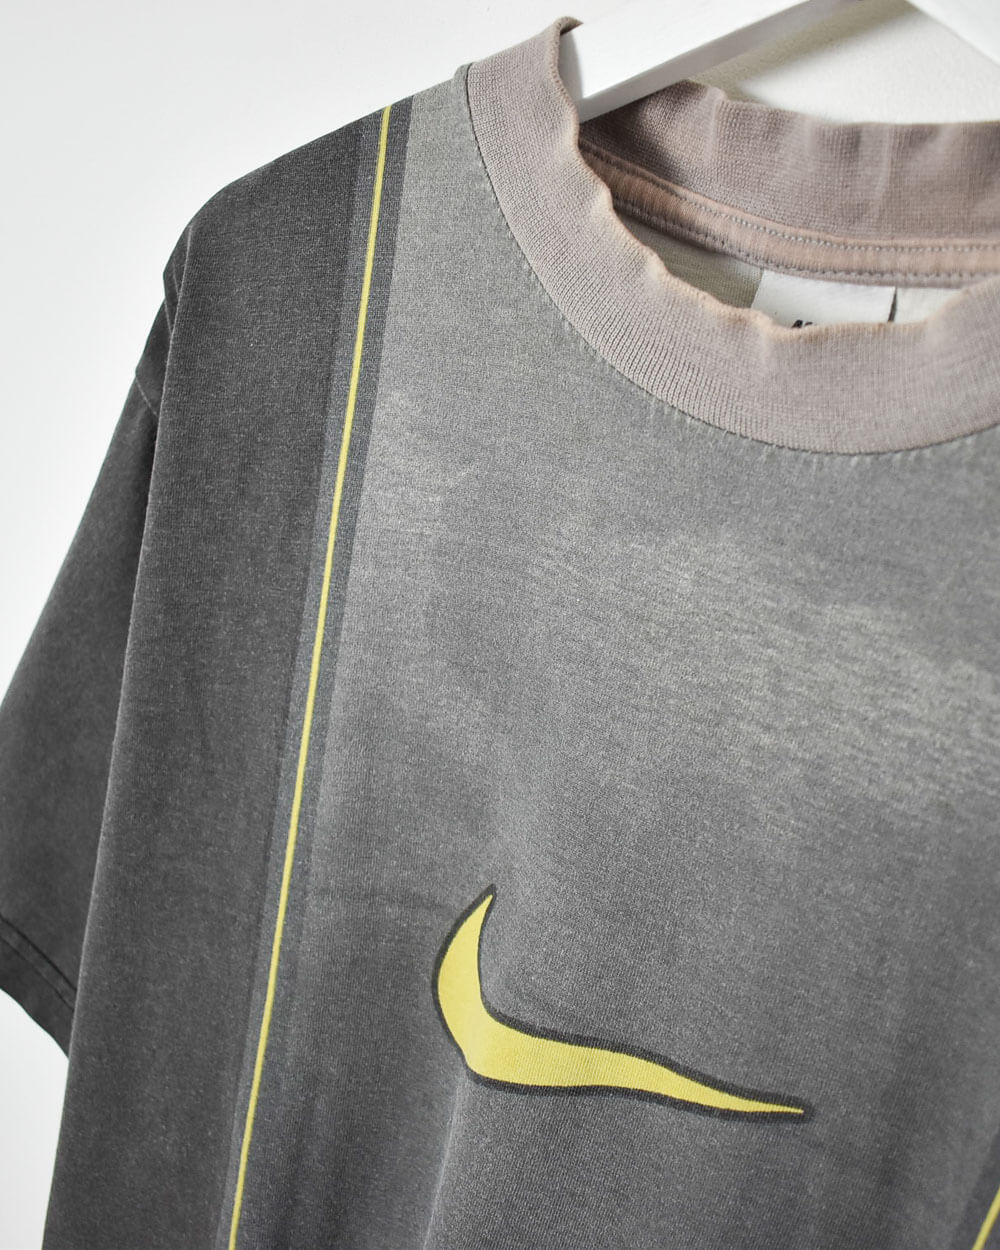 Grey Nike T-Shirt - Medium